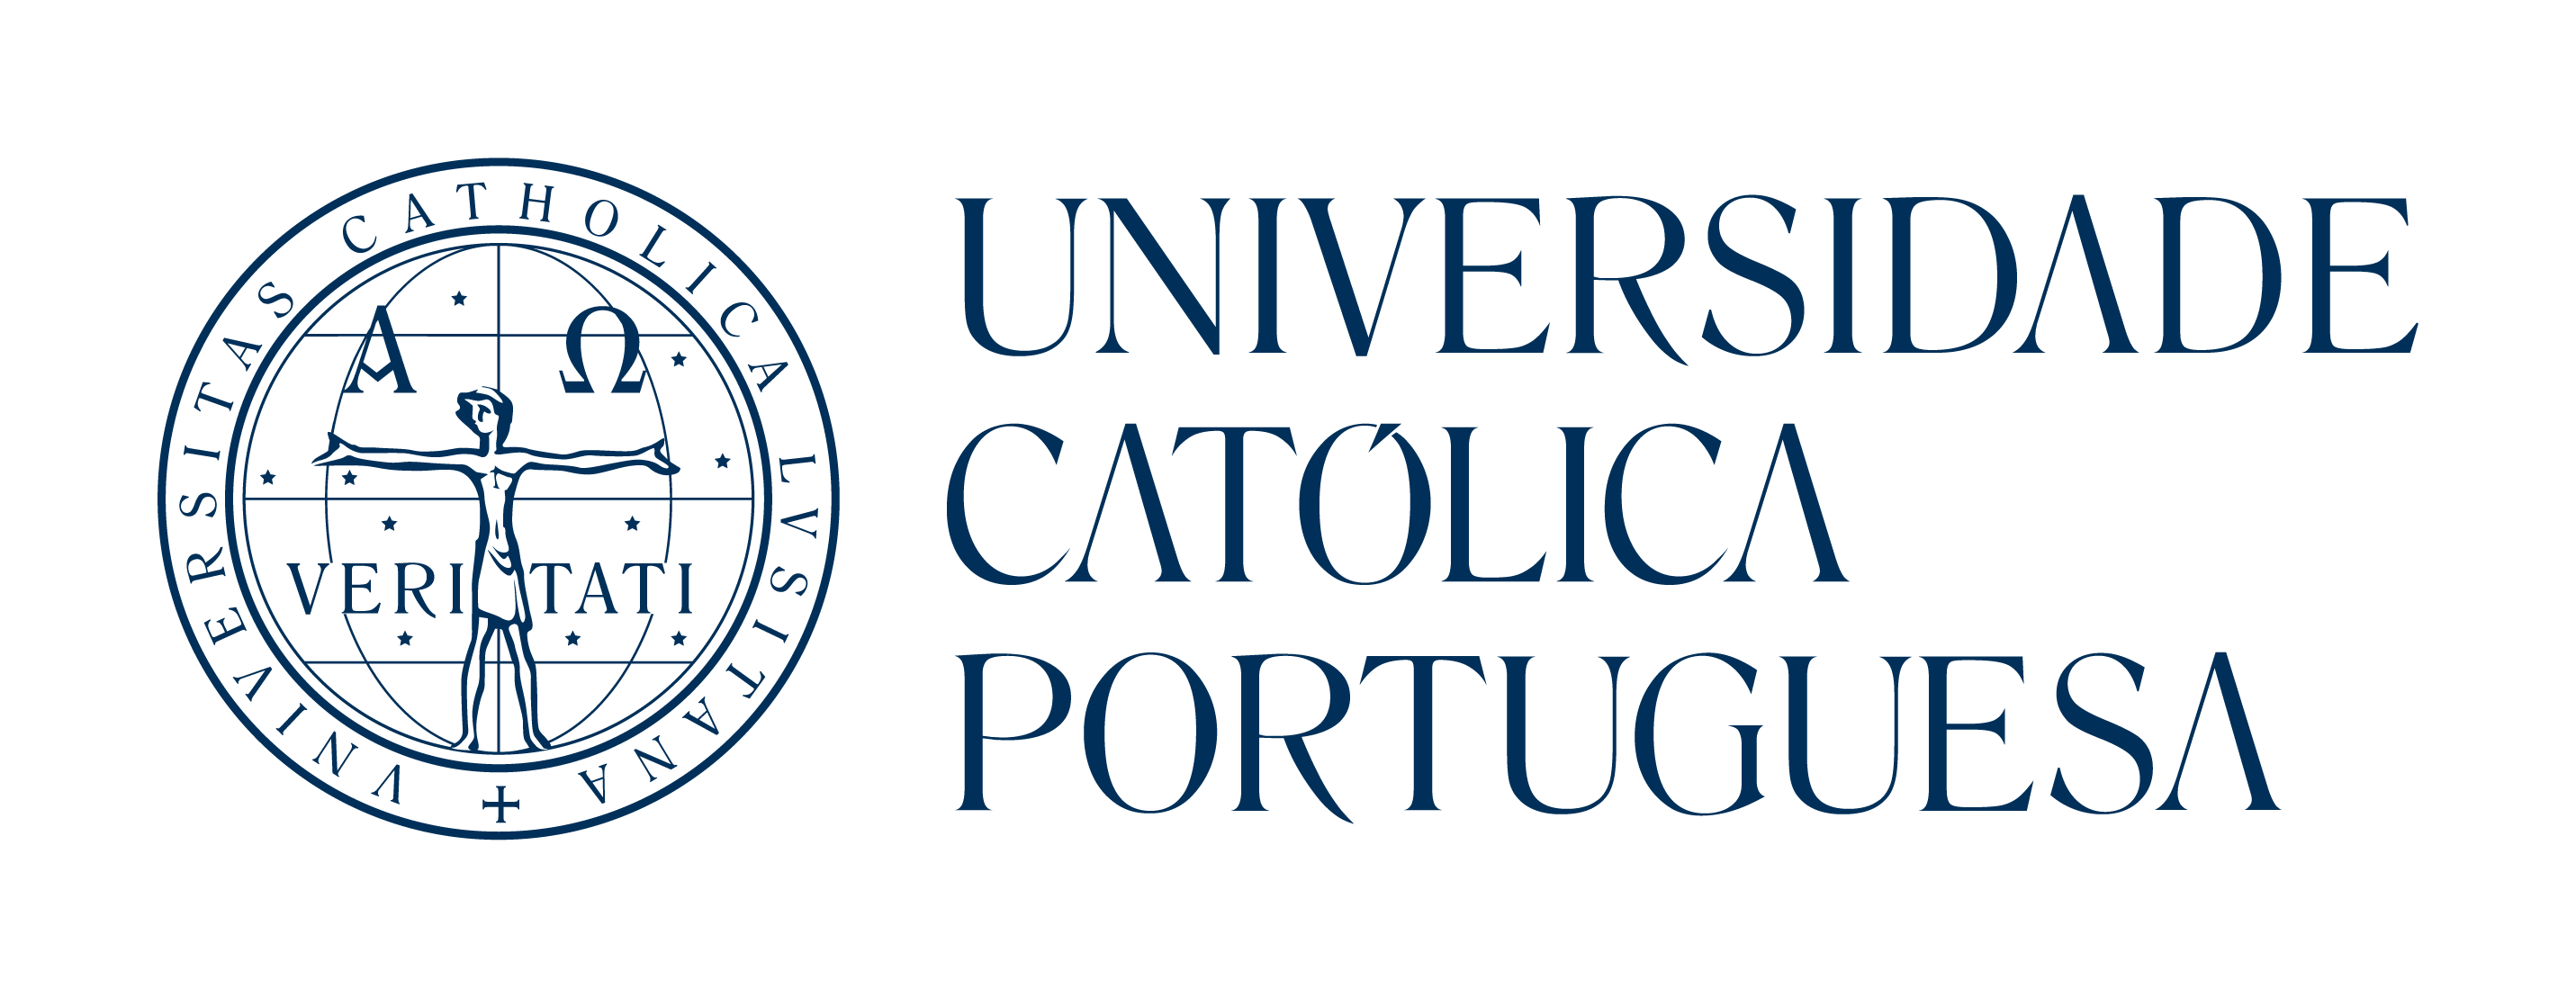 Universidade católica portuguesa (logo)